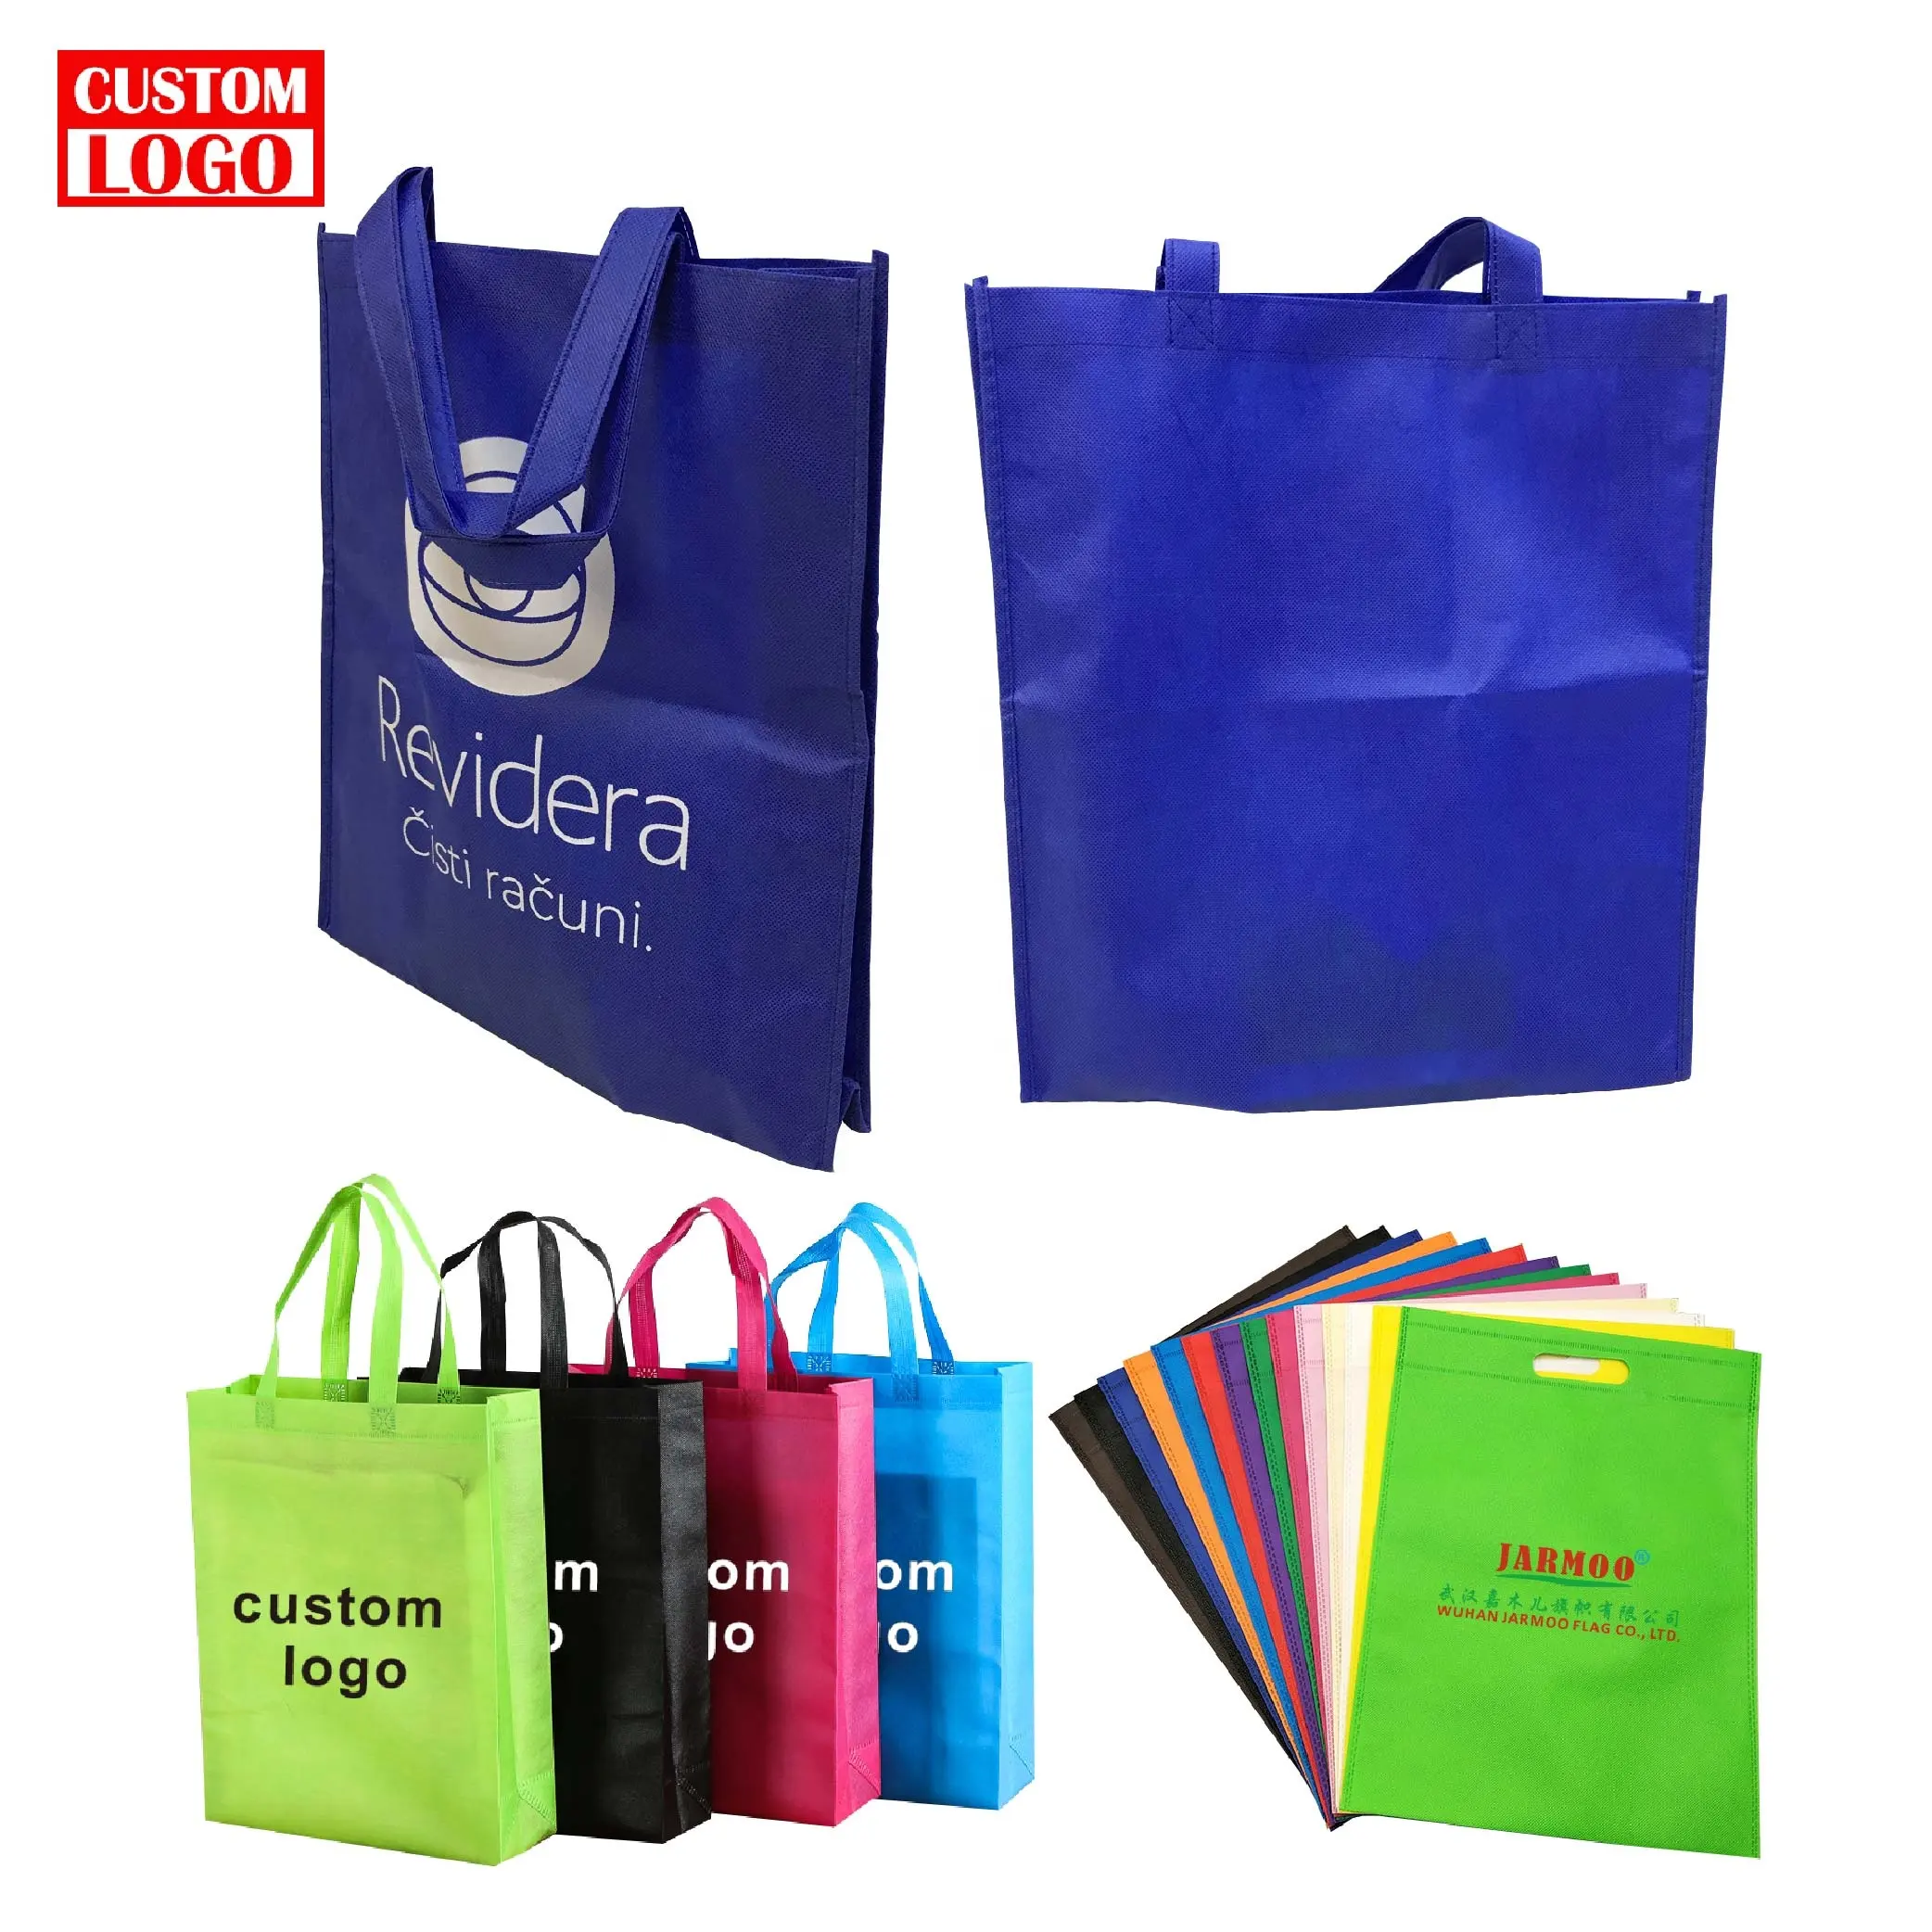 मुद्रण टिकाऊ कस्टम गैर बुना पुन: प्रयोज्य शॉपिंग बैग कस्टम लोगो कपड़े गैर बुना शॉपिंग बैग बनाने की क्रिया ढोना बैग